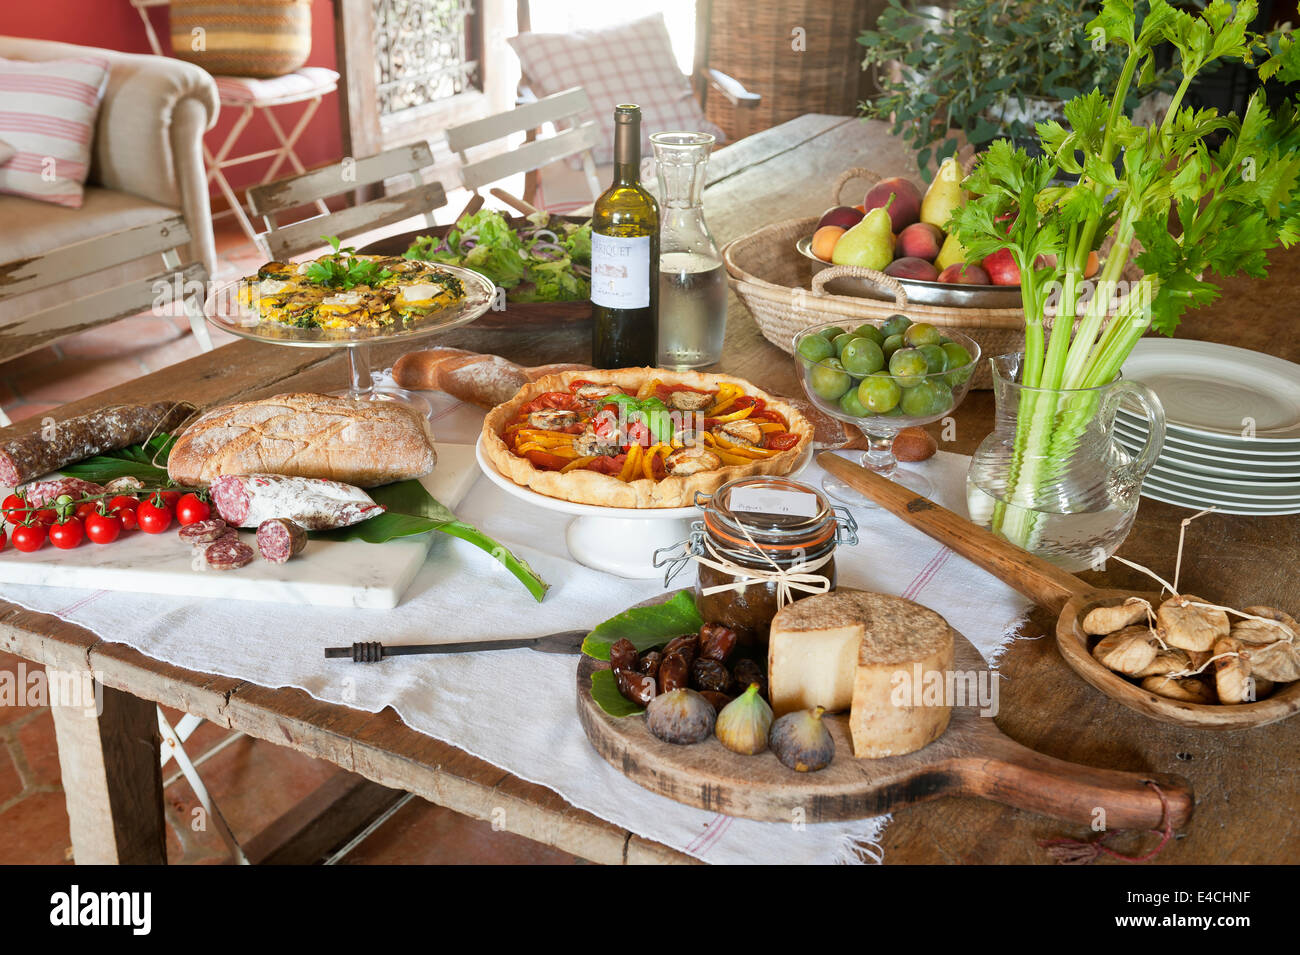 Table de pique-nique avec un assortiment de nourritures - fromage, salami, tarte, fruits et vin Banque D'Images